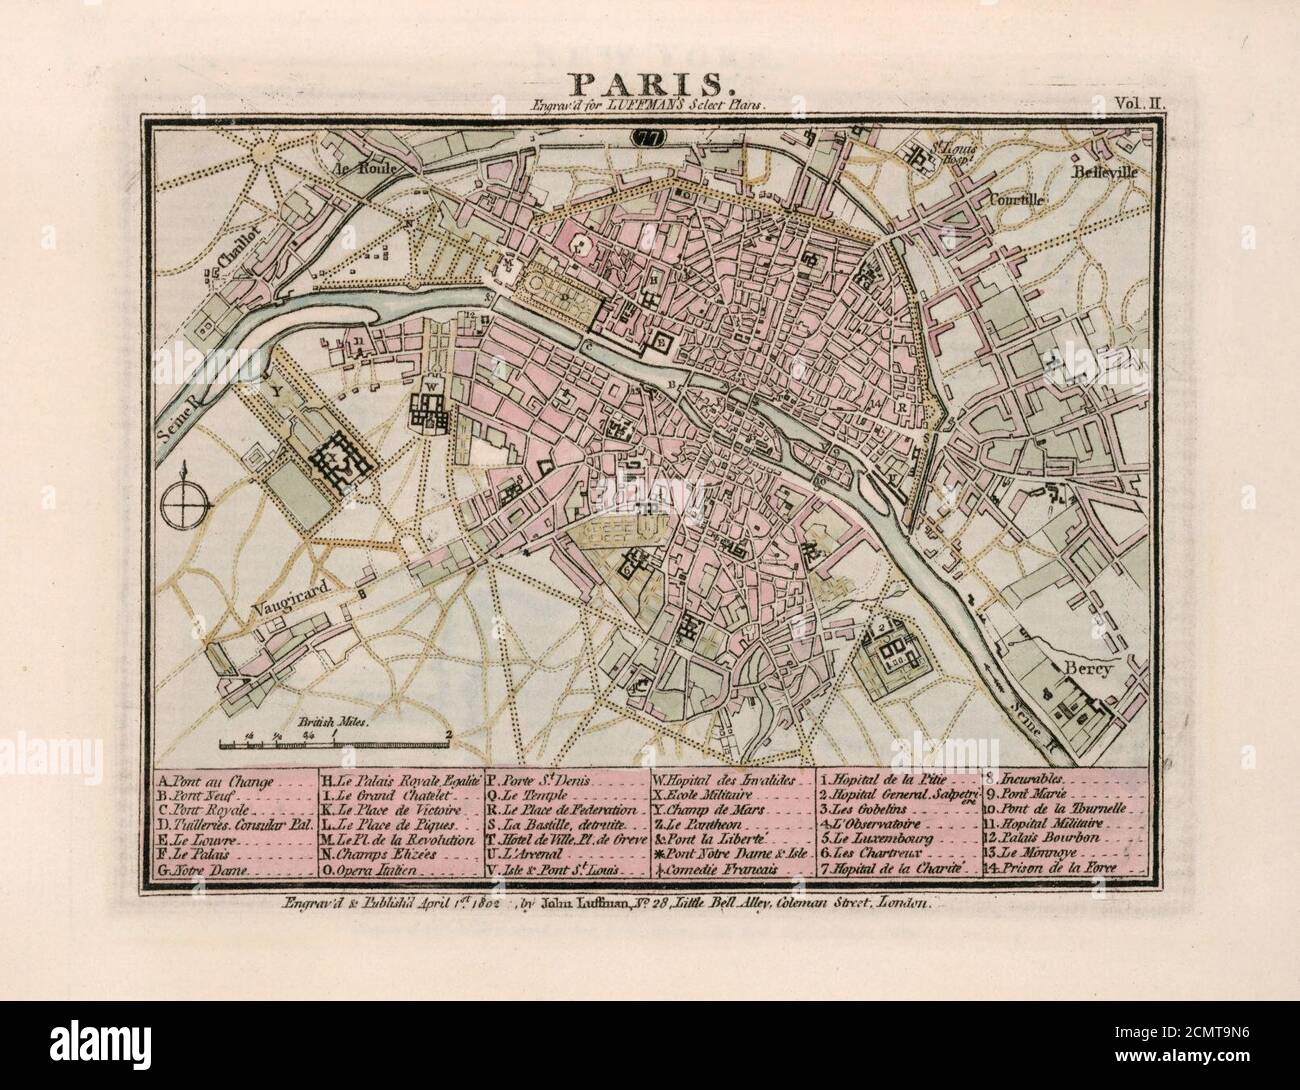 John Luffman, Sélectionner les plans des principales villes, ports, forts... - Paris, 1802 - David Rumsey. Banque D'Images